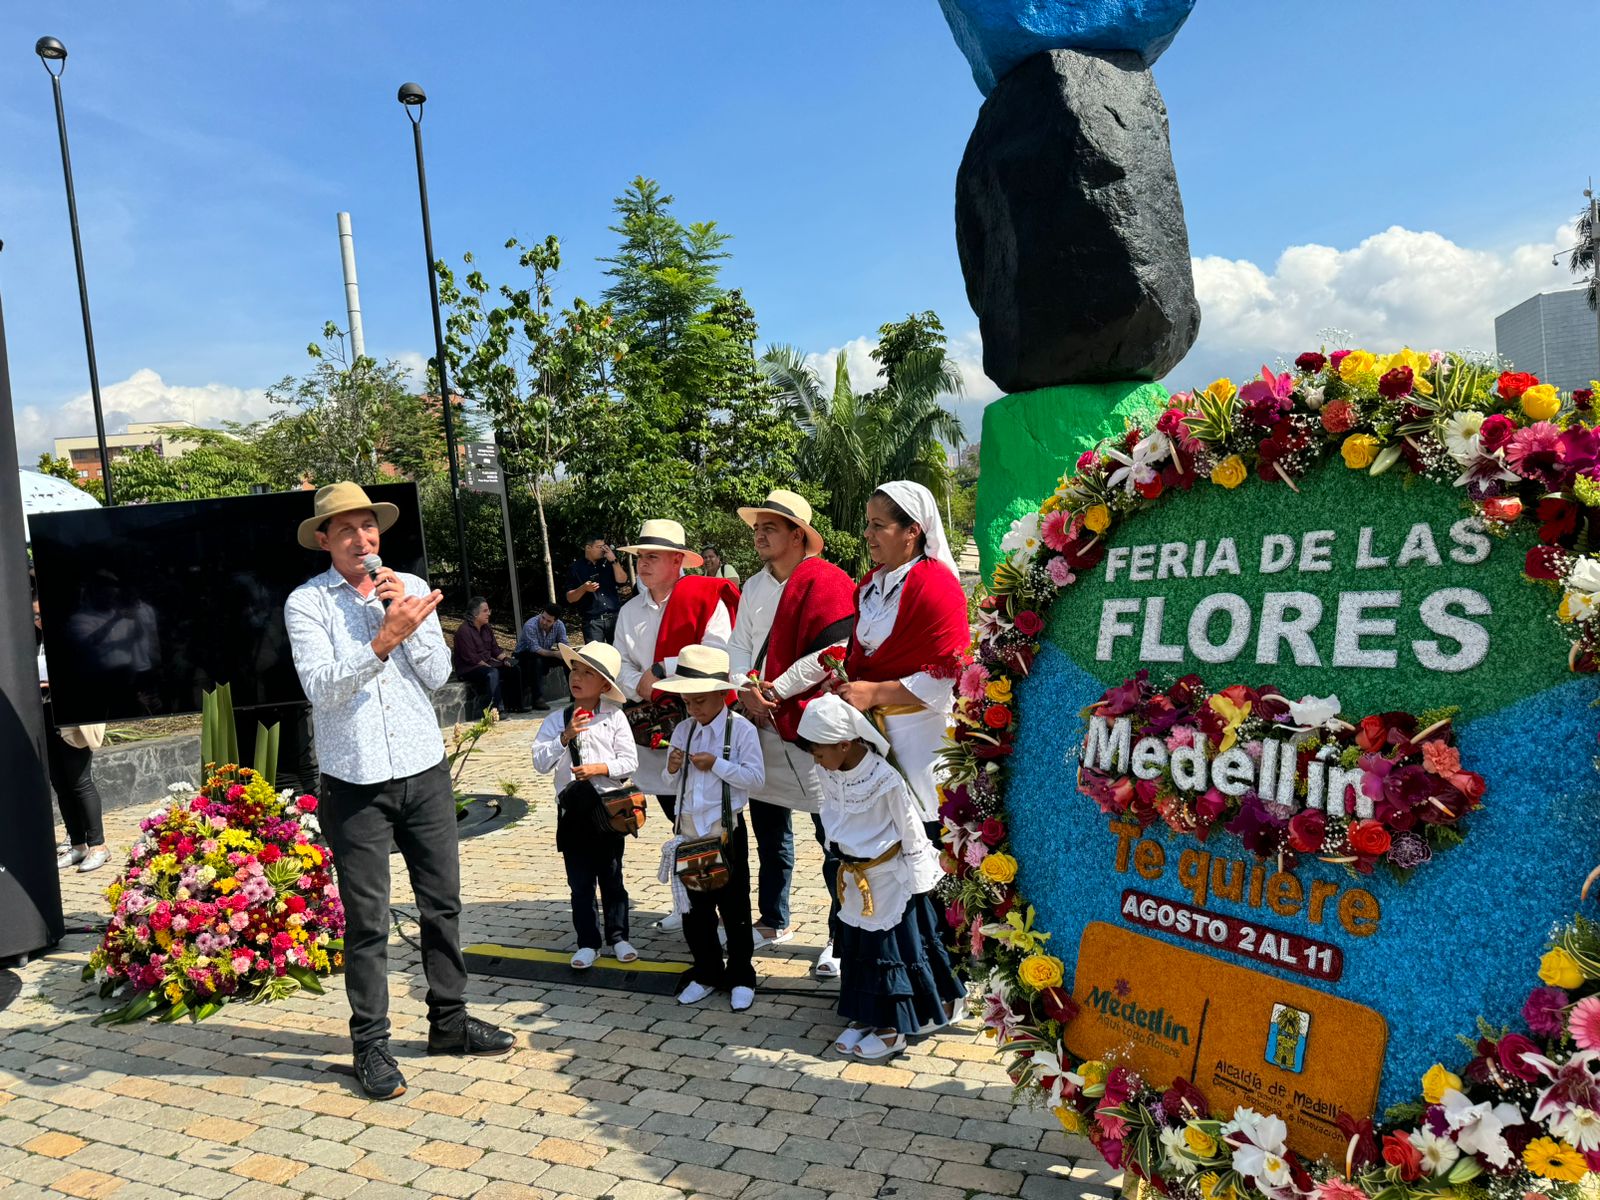 Feria de las Flores para la gente: estas son las novedades de la gran fiesta de Medellín